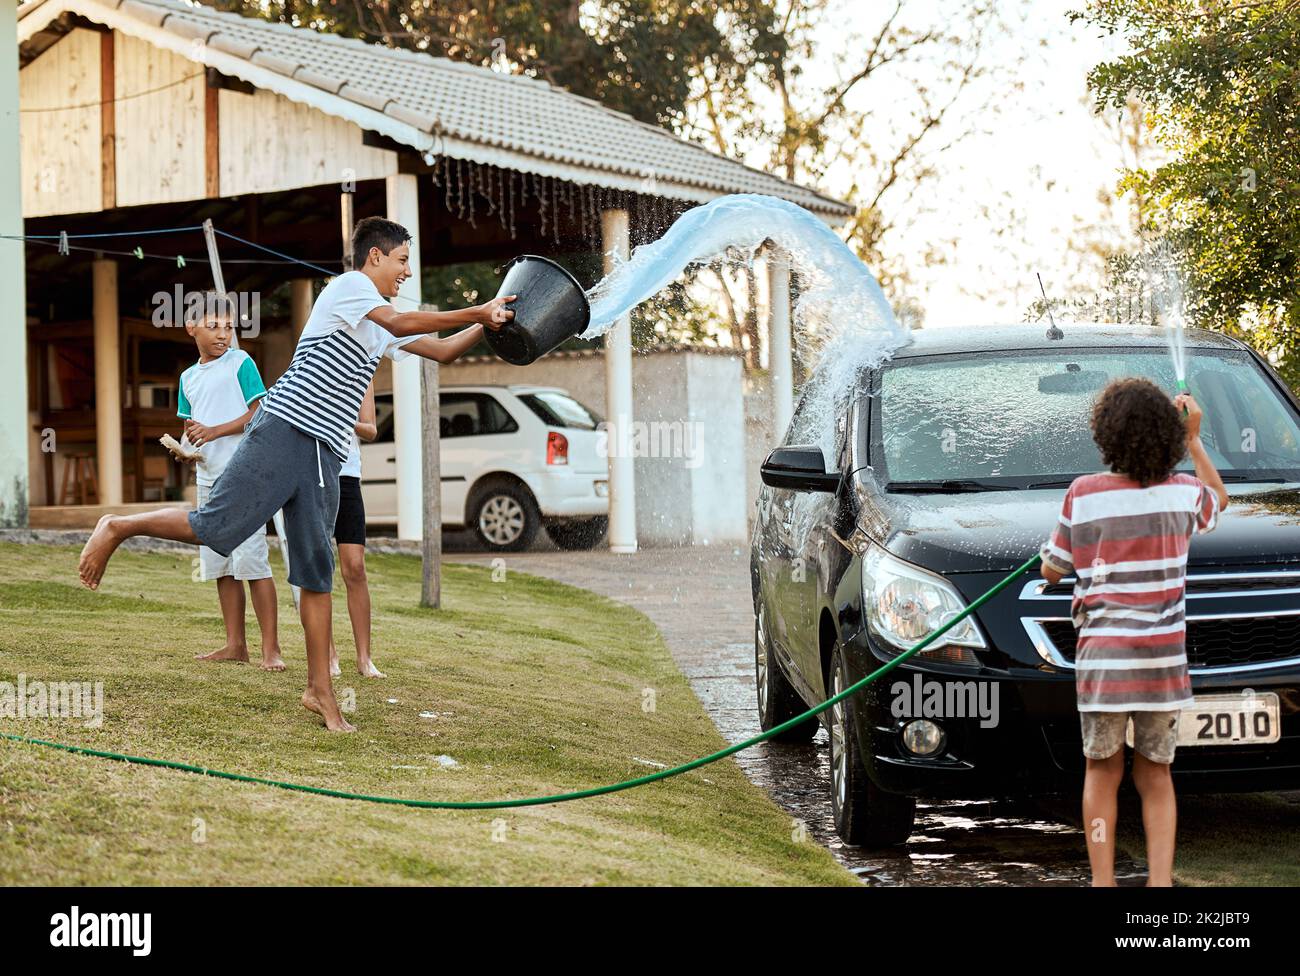 Regardez les gars de l'eau à venir. Prise de vue d'un groupe de jeunes enfants gaies qui lavent la voiture de leurs parents à l'extérieur pendant la journée. Banque D'Images